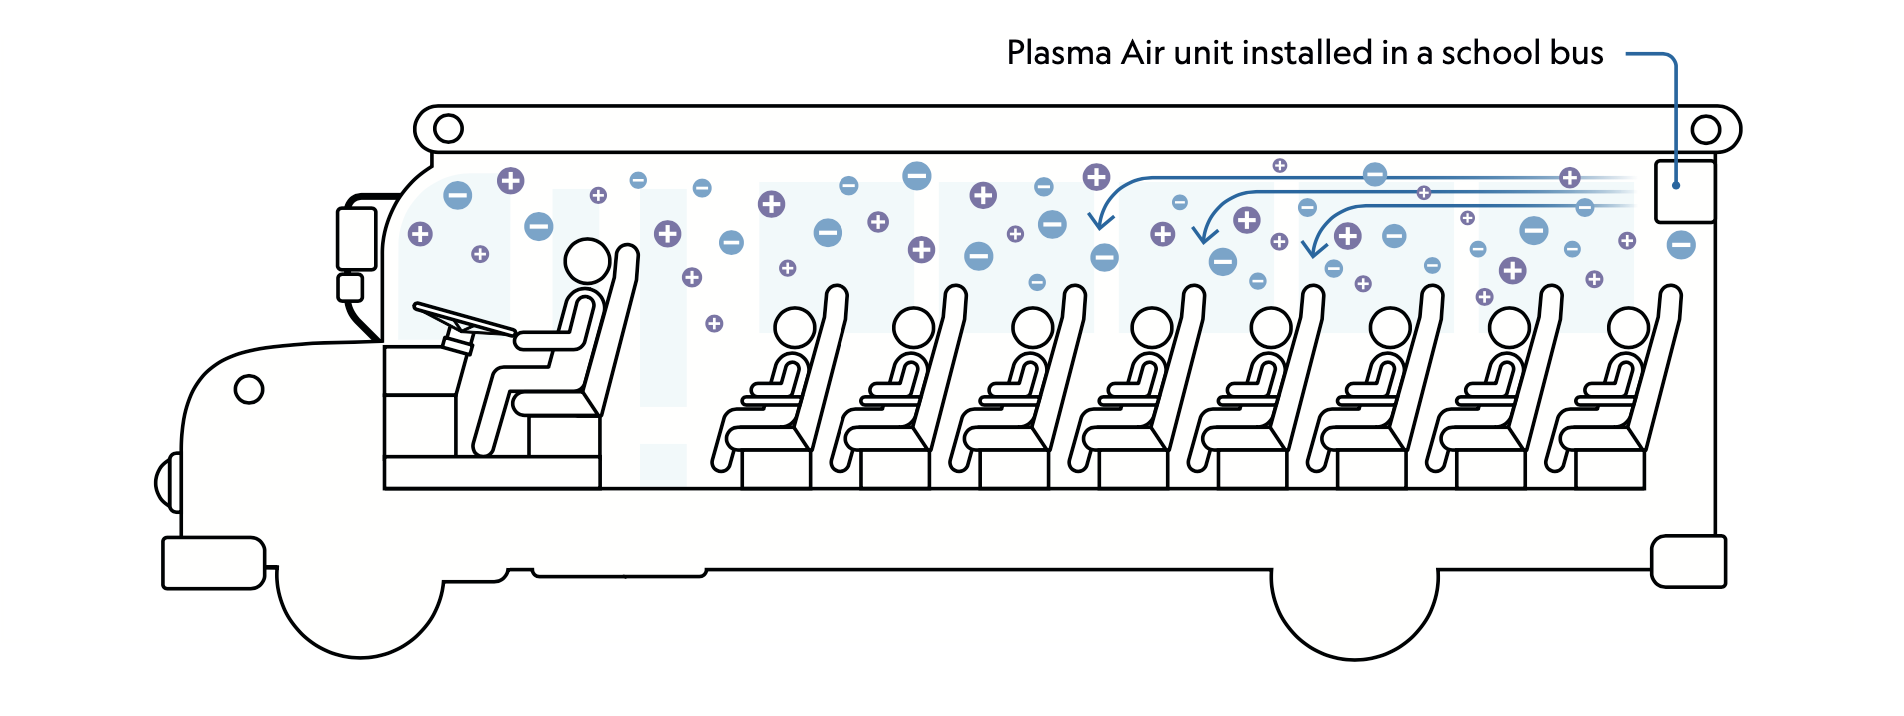 Plasma Air units help clean the air inside the bus.